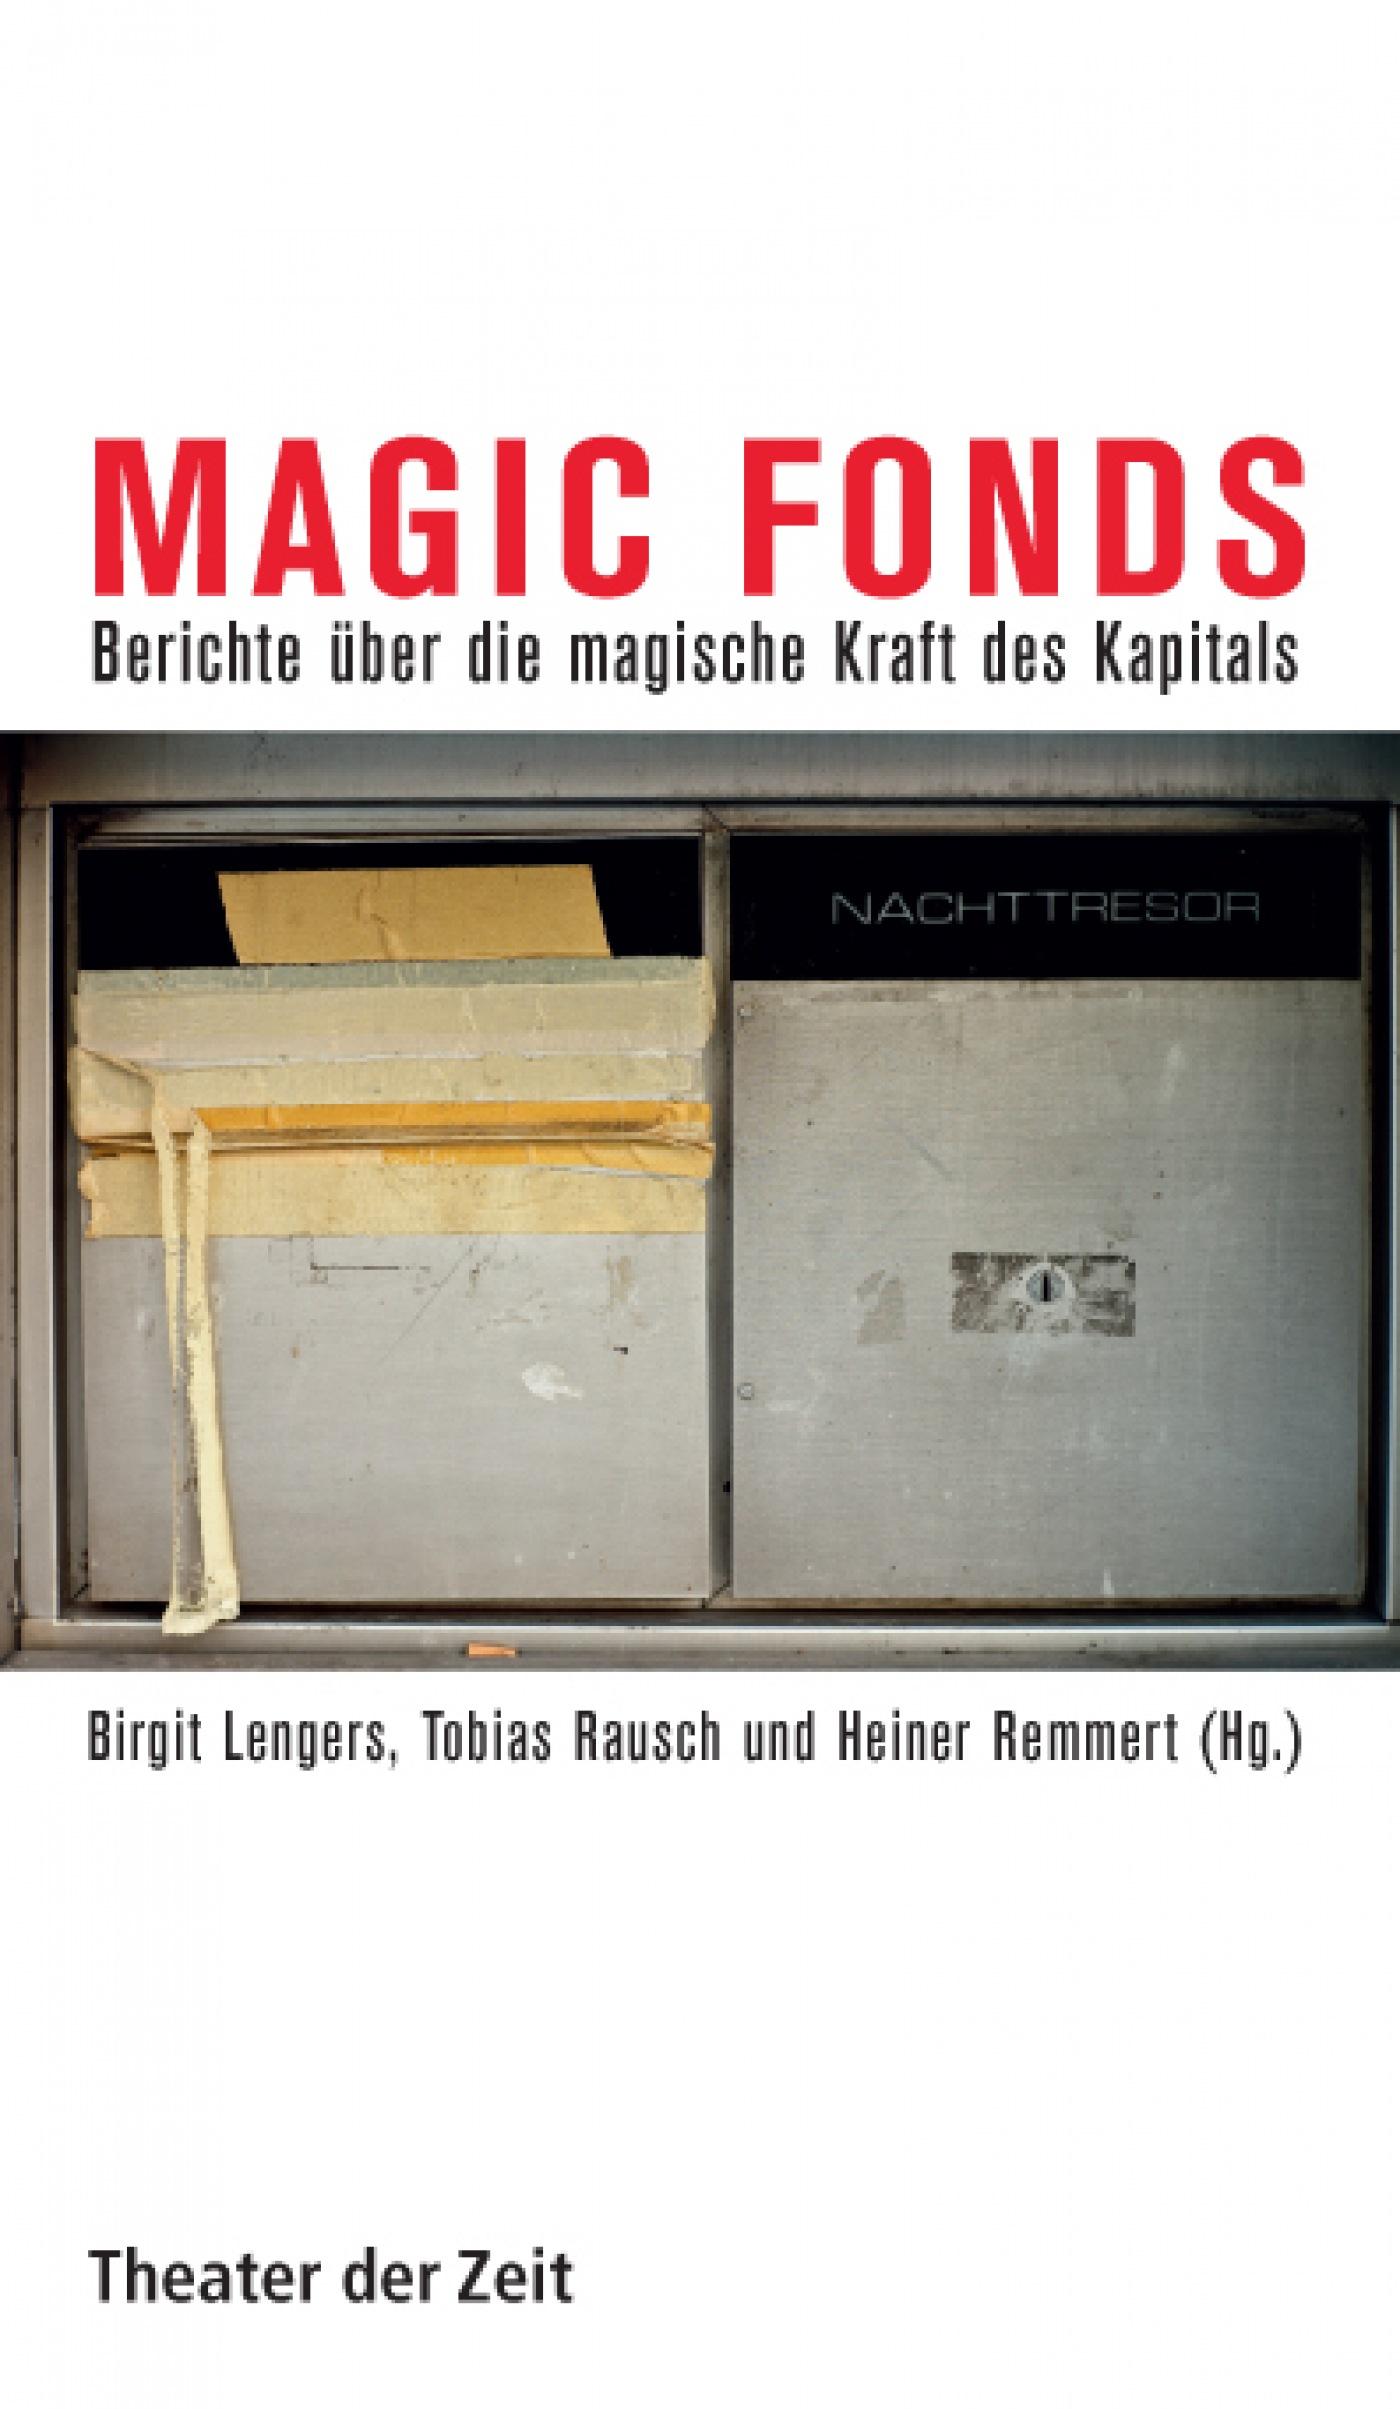 Recherchen 97 "Magic Fonds"